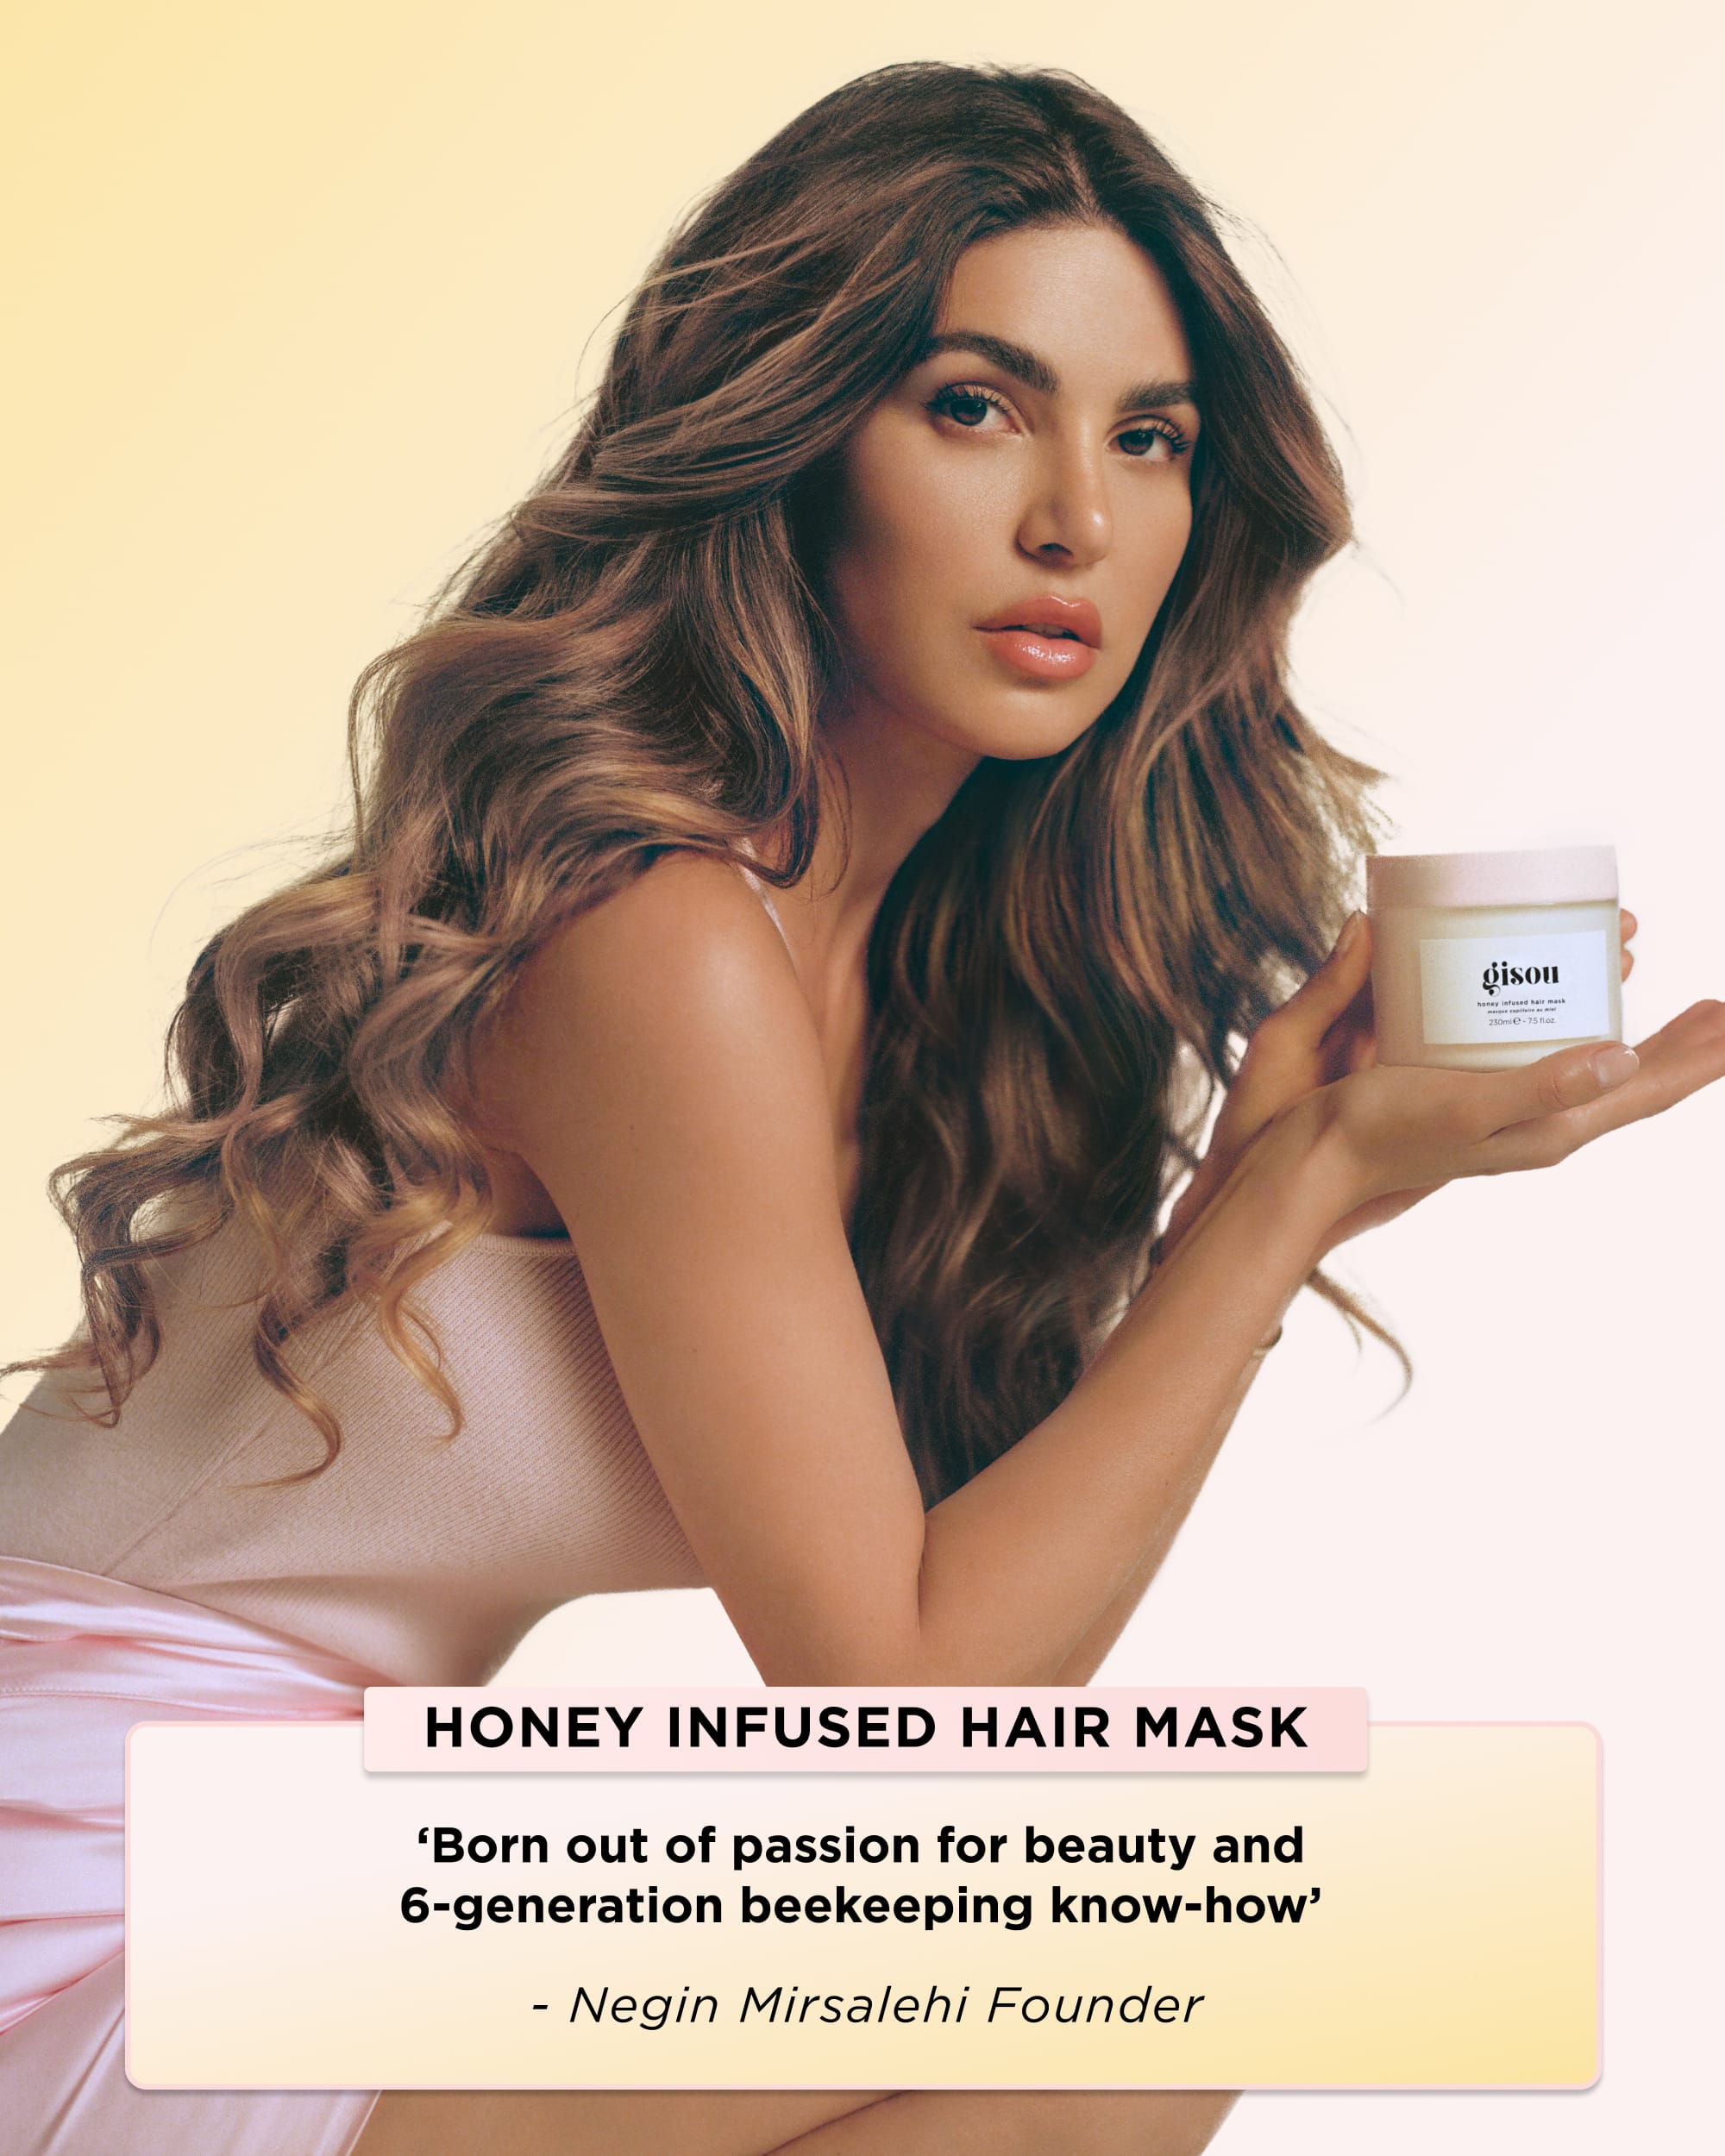 Honey Infused Hair Mask - Nourish, Repair | Gisou